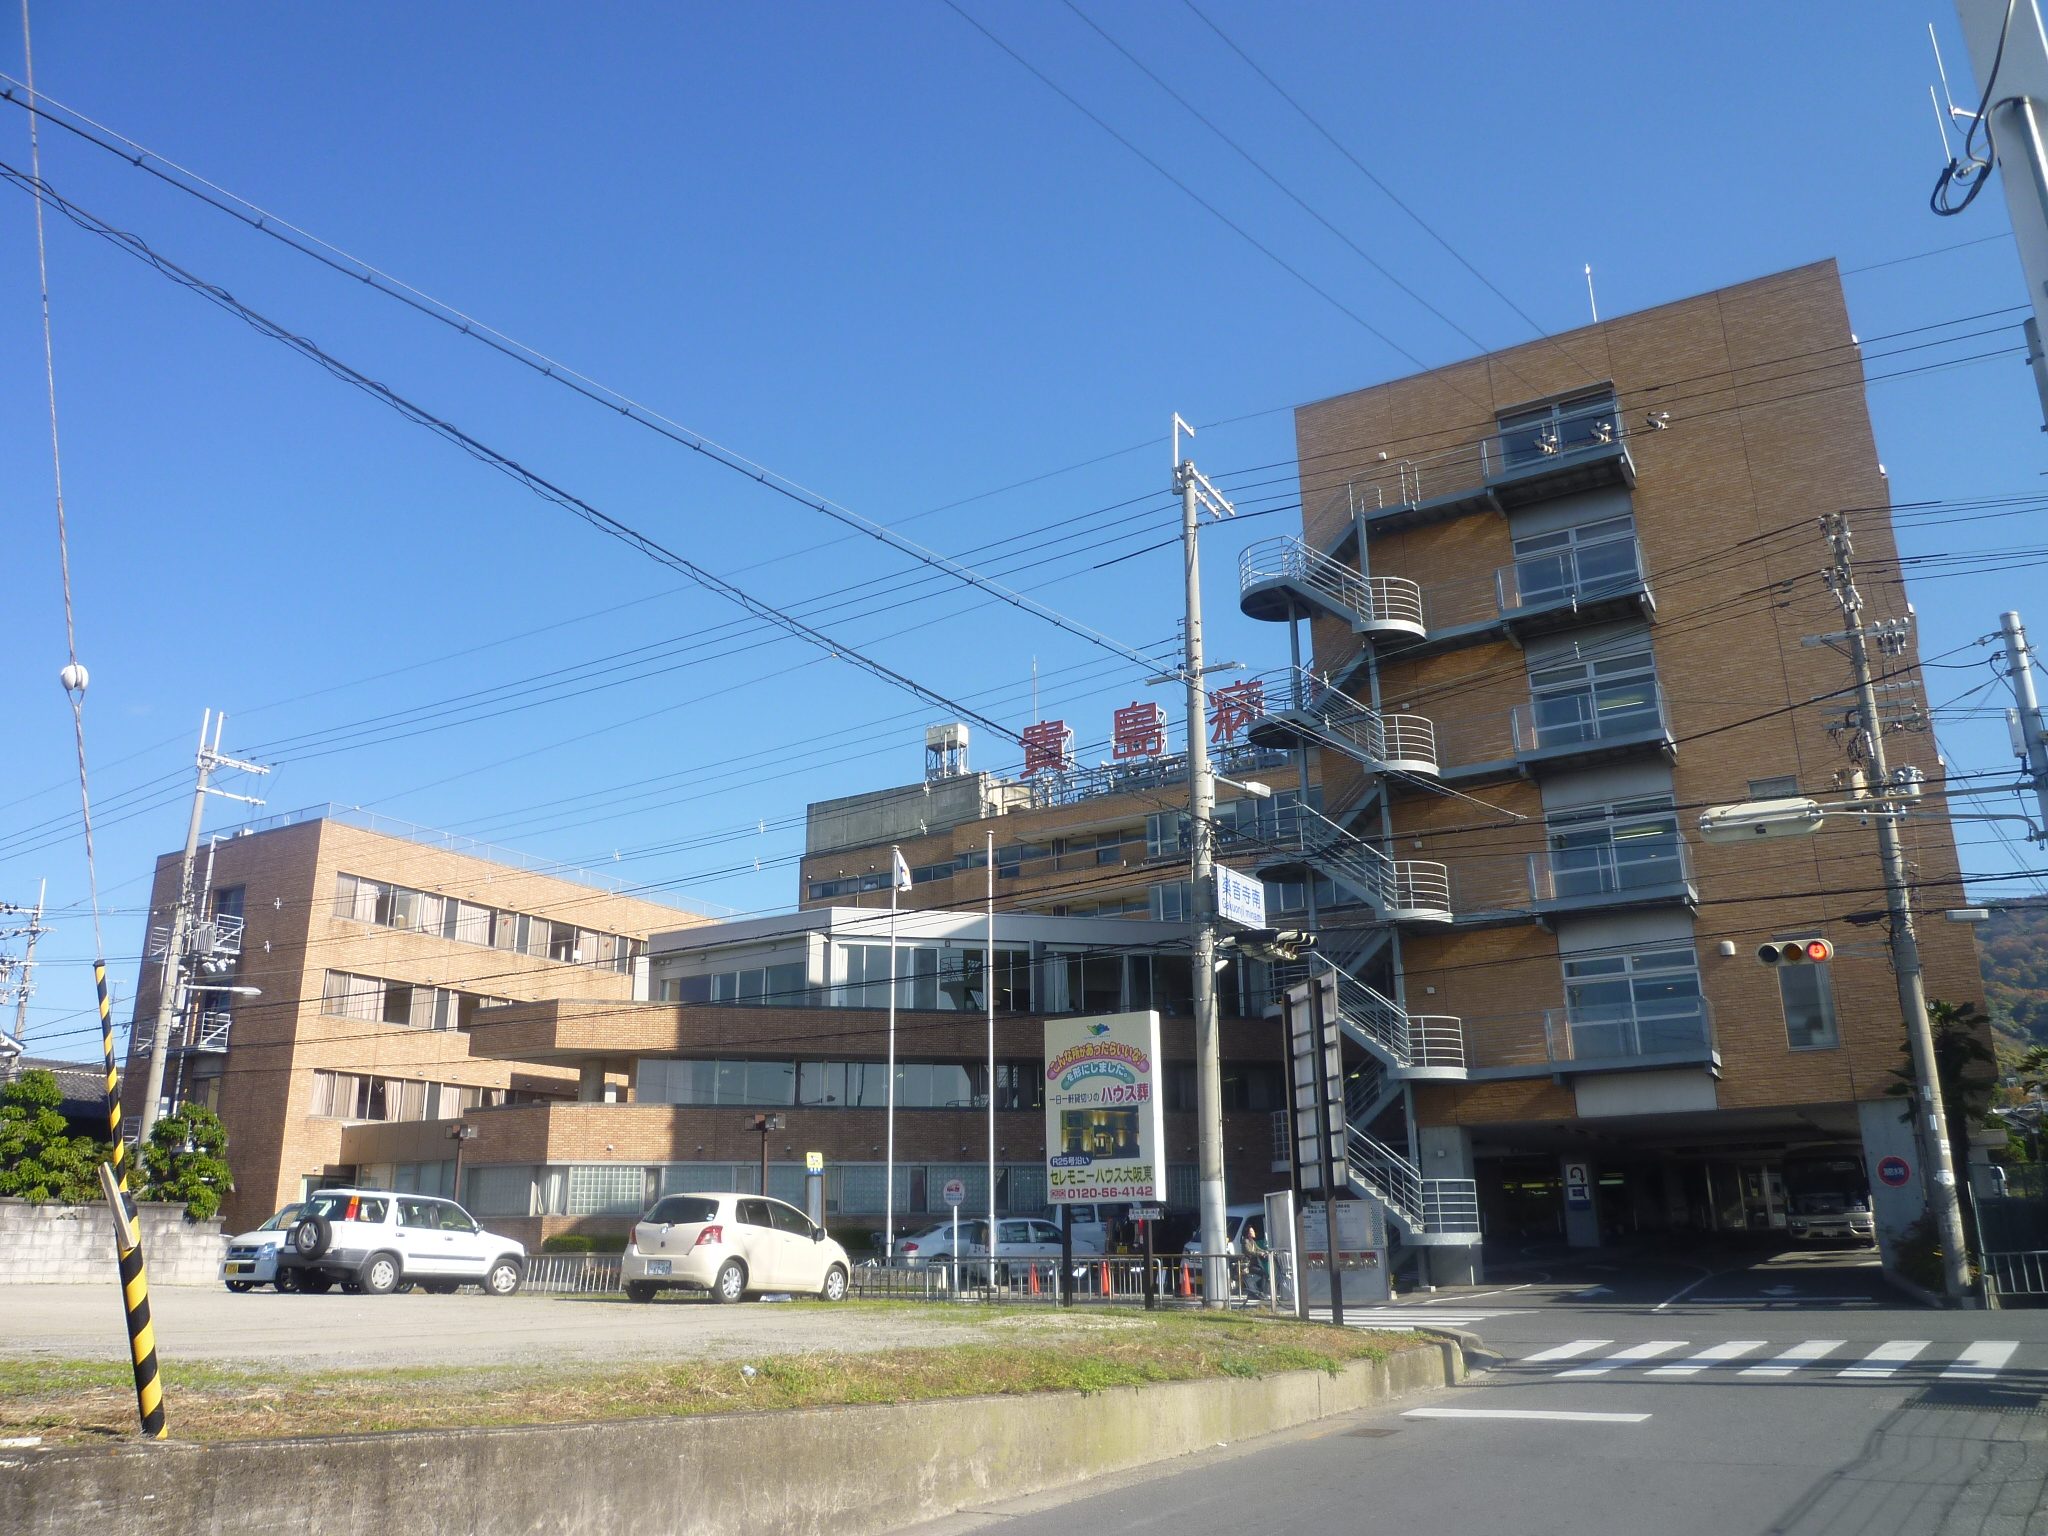 Hospital. Kijima Board Kijima hospital this Council to (hospital) 1141m